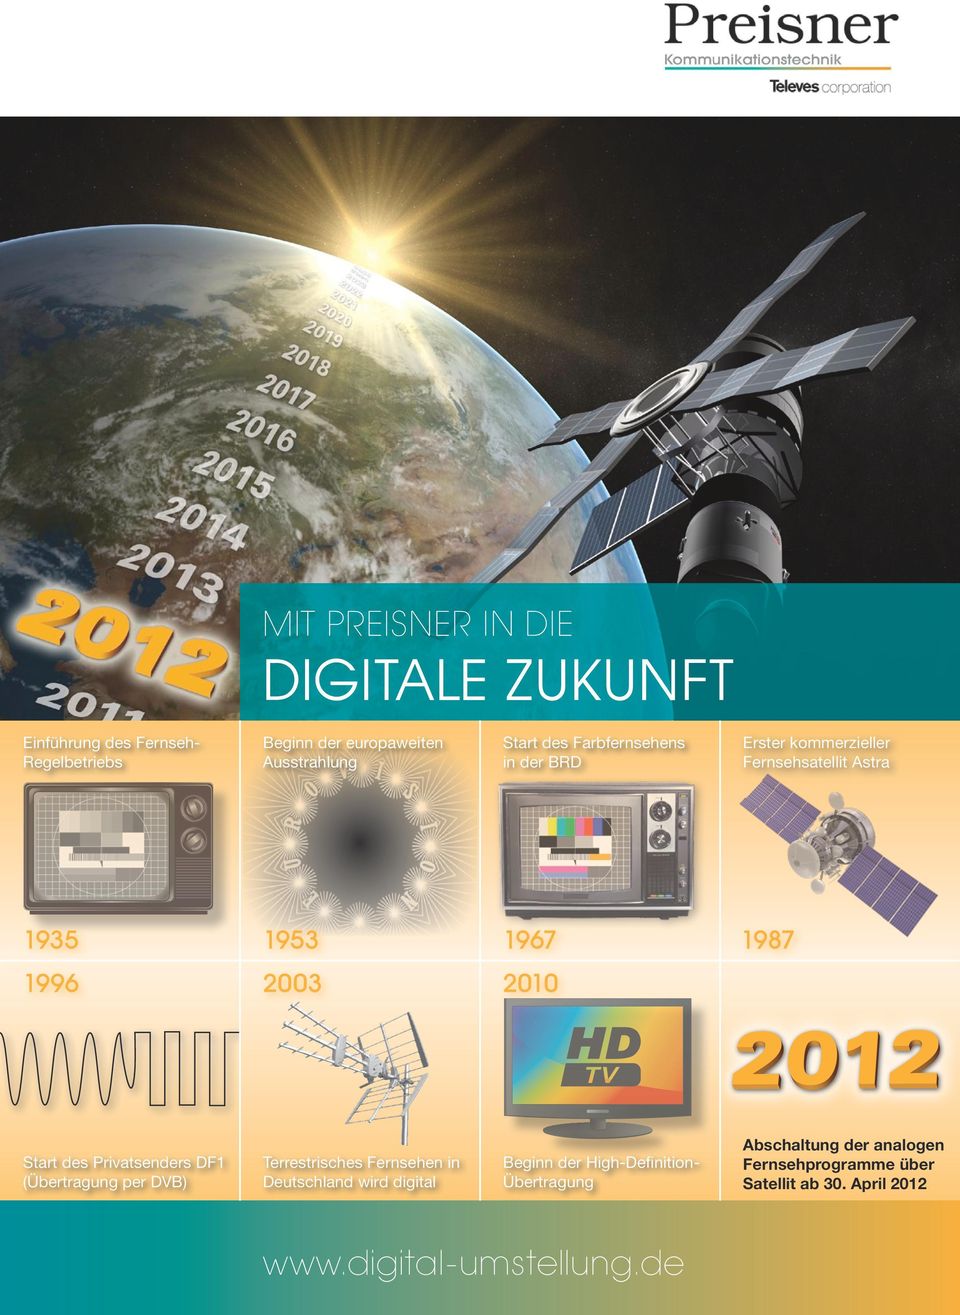 Start des Privatsenders DF1 (Übertragung per DVB) Terrestrisches Fernsehen in Deutschland wird digital Beginn der